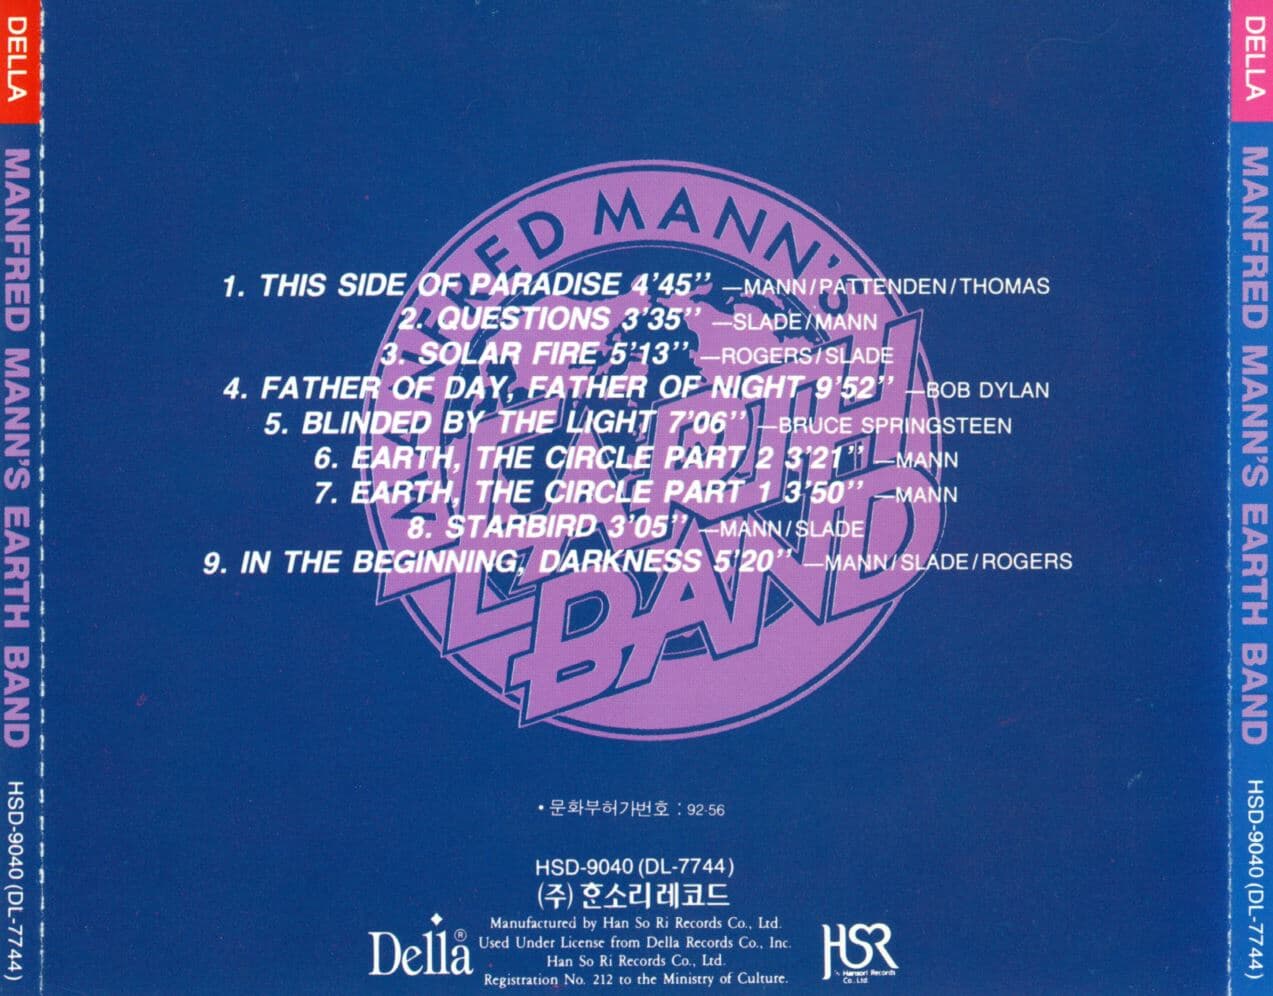 맨프레드 맨스 어쓰 밴드 - Manfred Mann's Earth Band - Questions Earth, The Circle Part 1, 2 